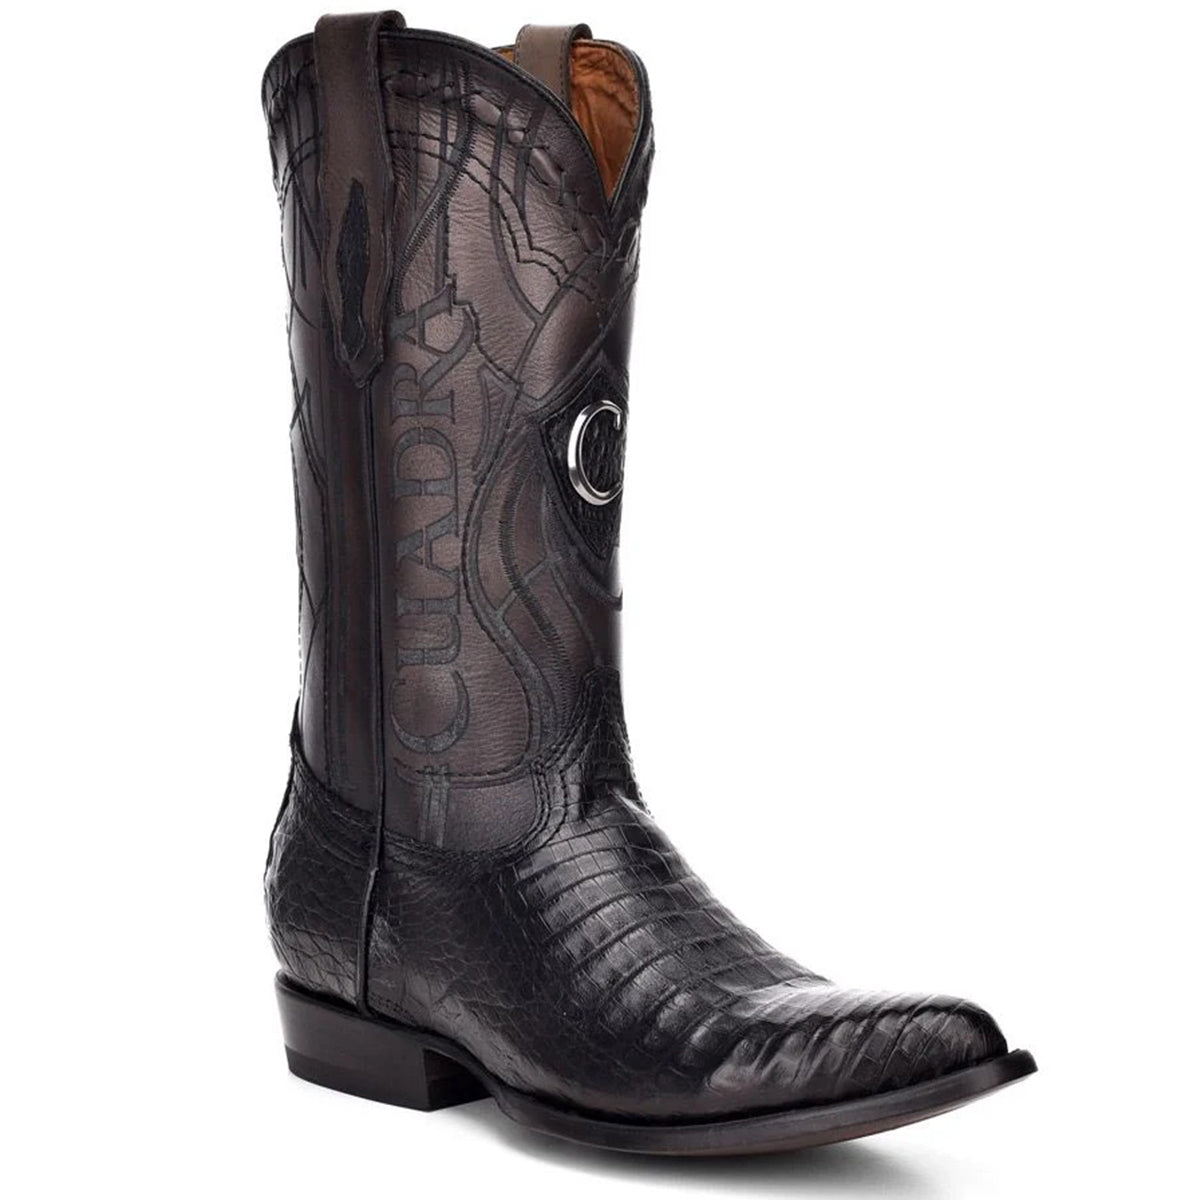 Mens Cowboy Boots | Vaquero Boots – VAQUERO BOOTS